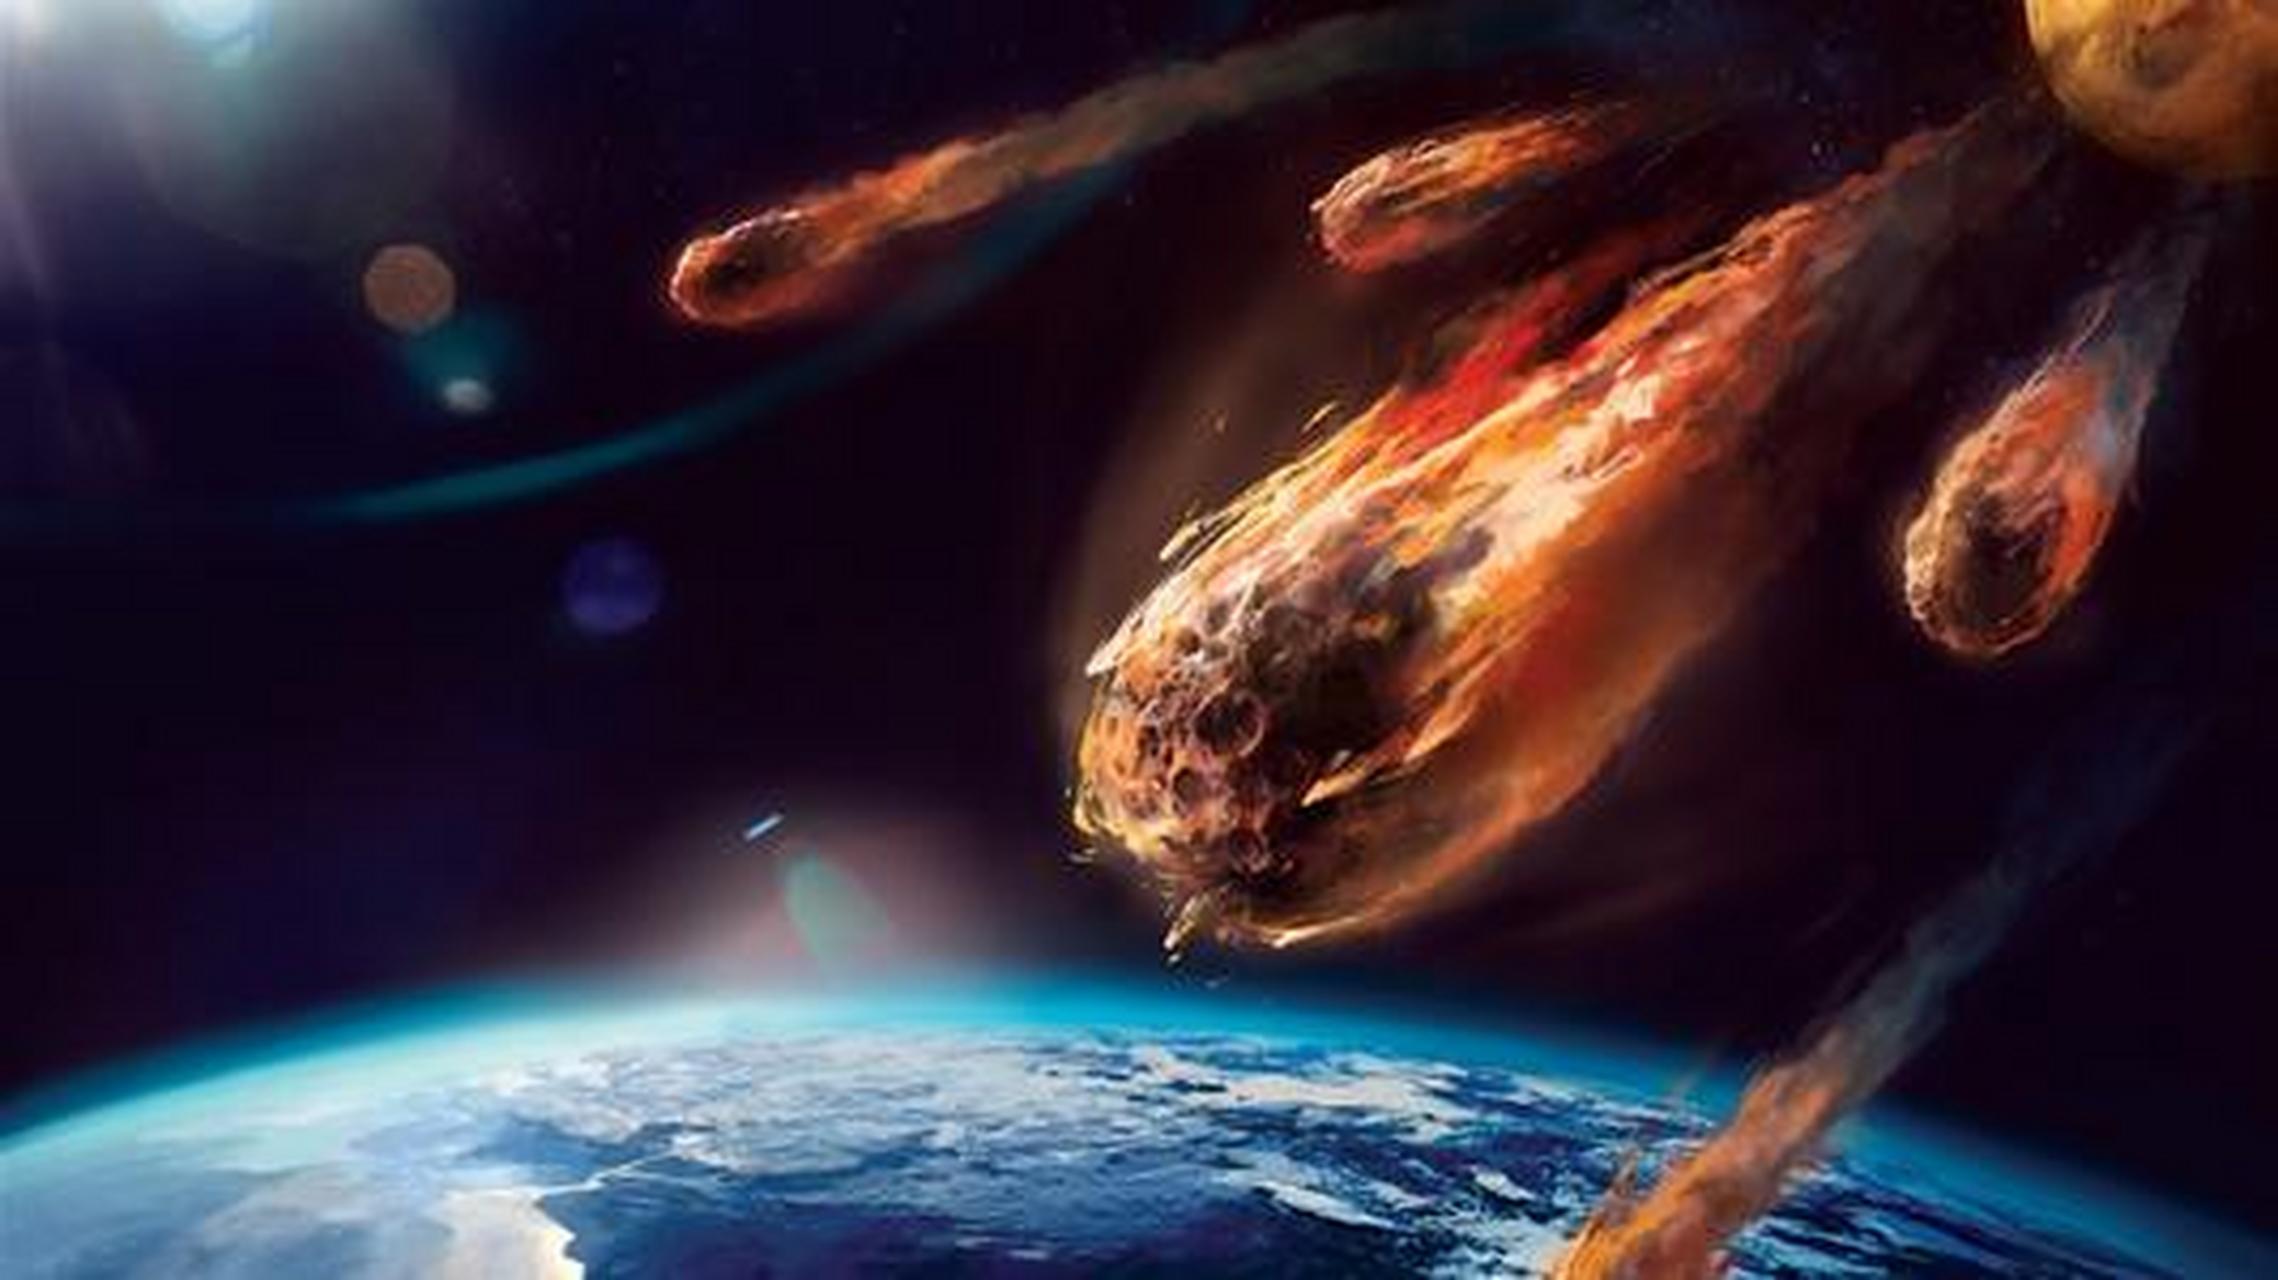 流星,是闯入大气层的一种行星际物质在大气层中与空气摩擦发光的现象